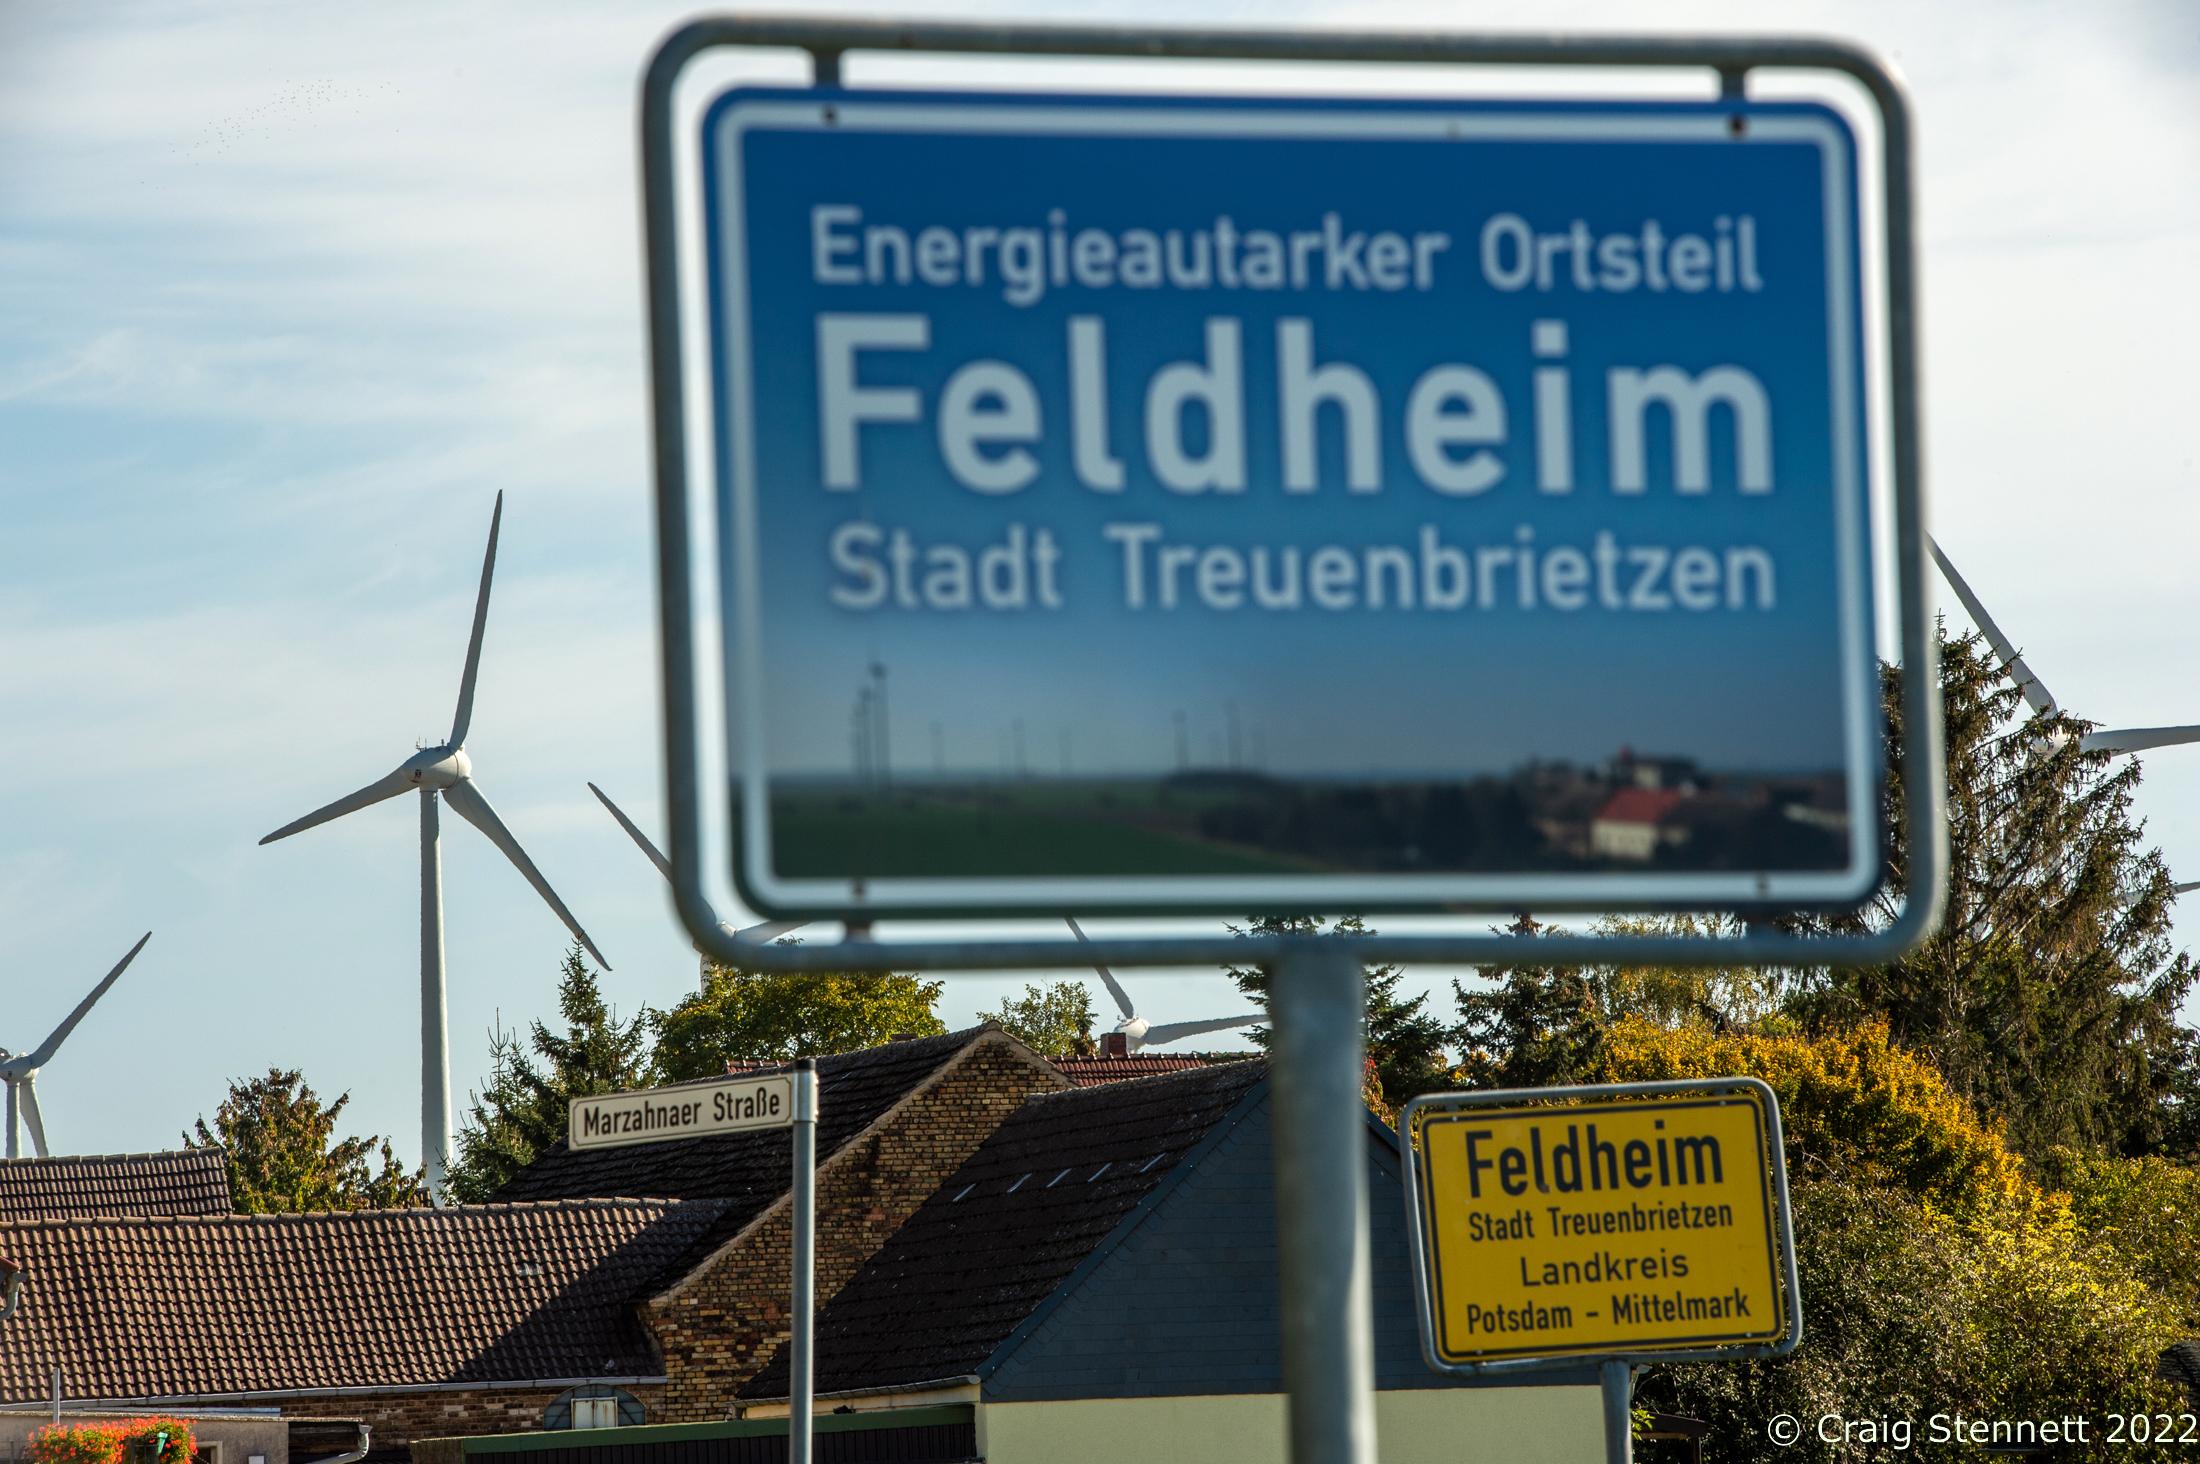 Feldheim, Germany 100% Energy self-sufficient-Getty Editorial